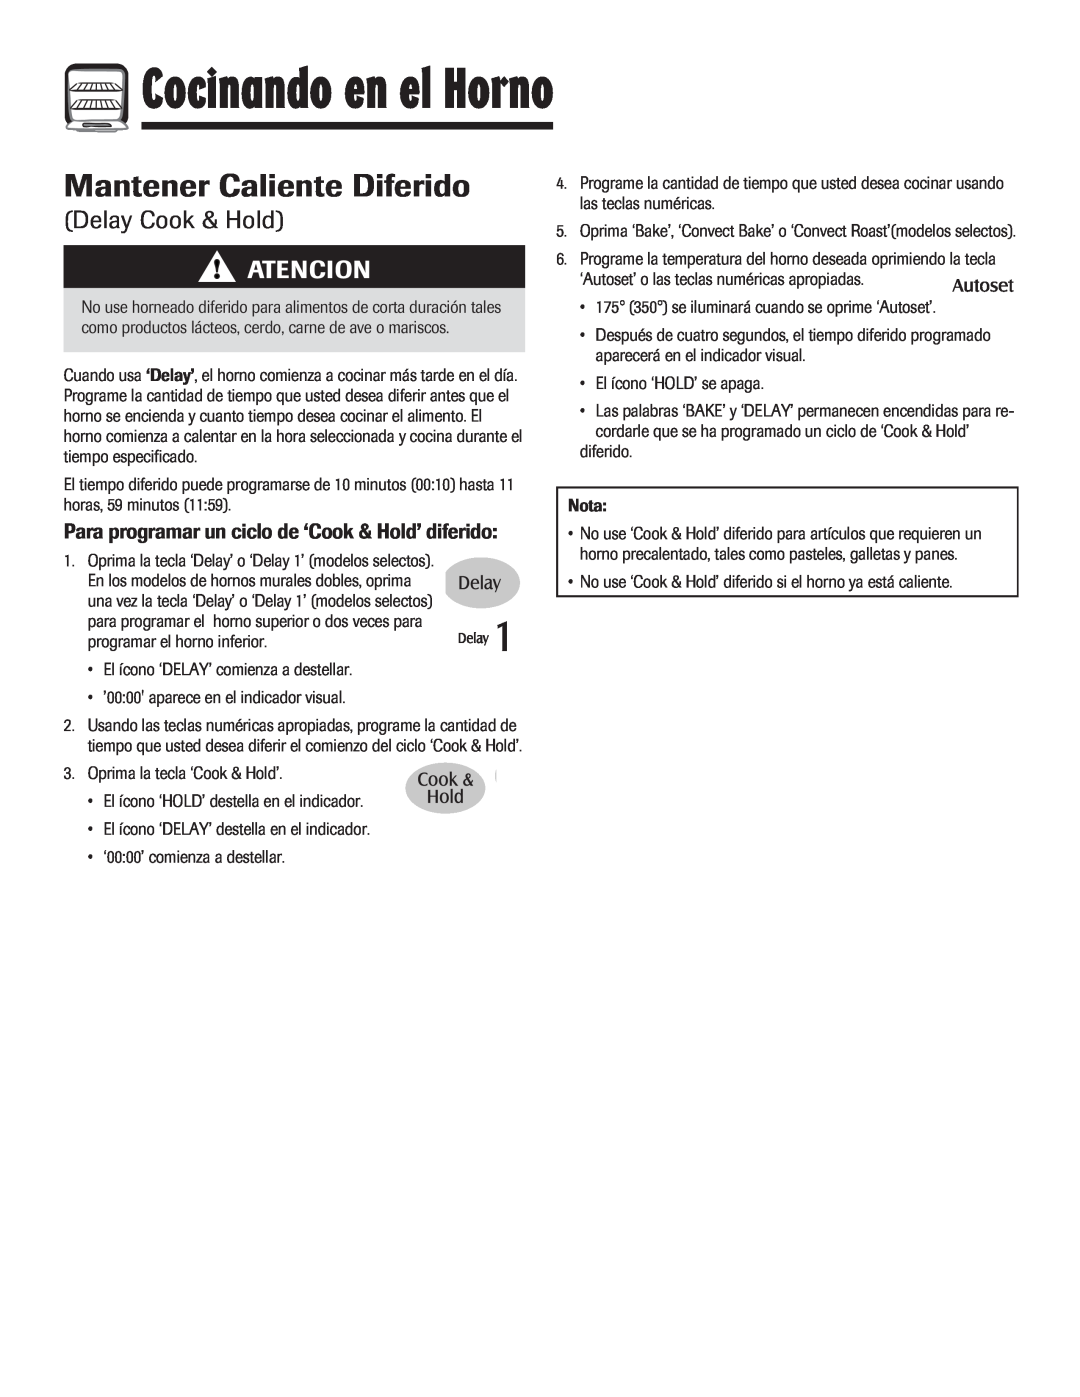 Maytag MEW6630DDW warranty Mantener Caliente Diferido, Delay Cook & Hold, Para programar un ciclo de ‘Cook & Hold’ diferido 